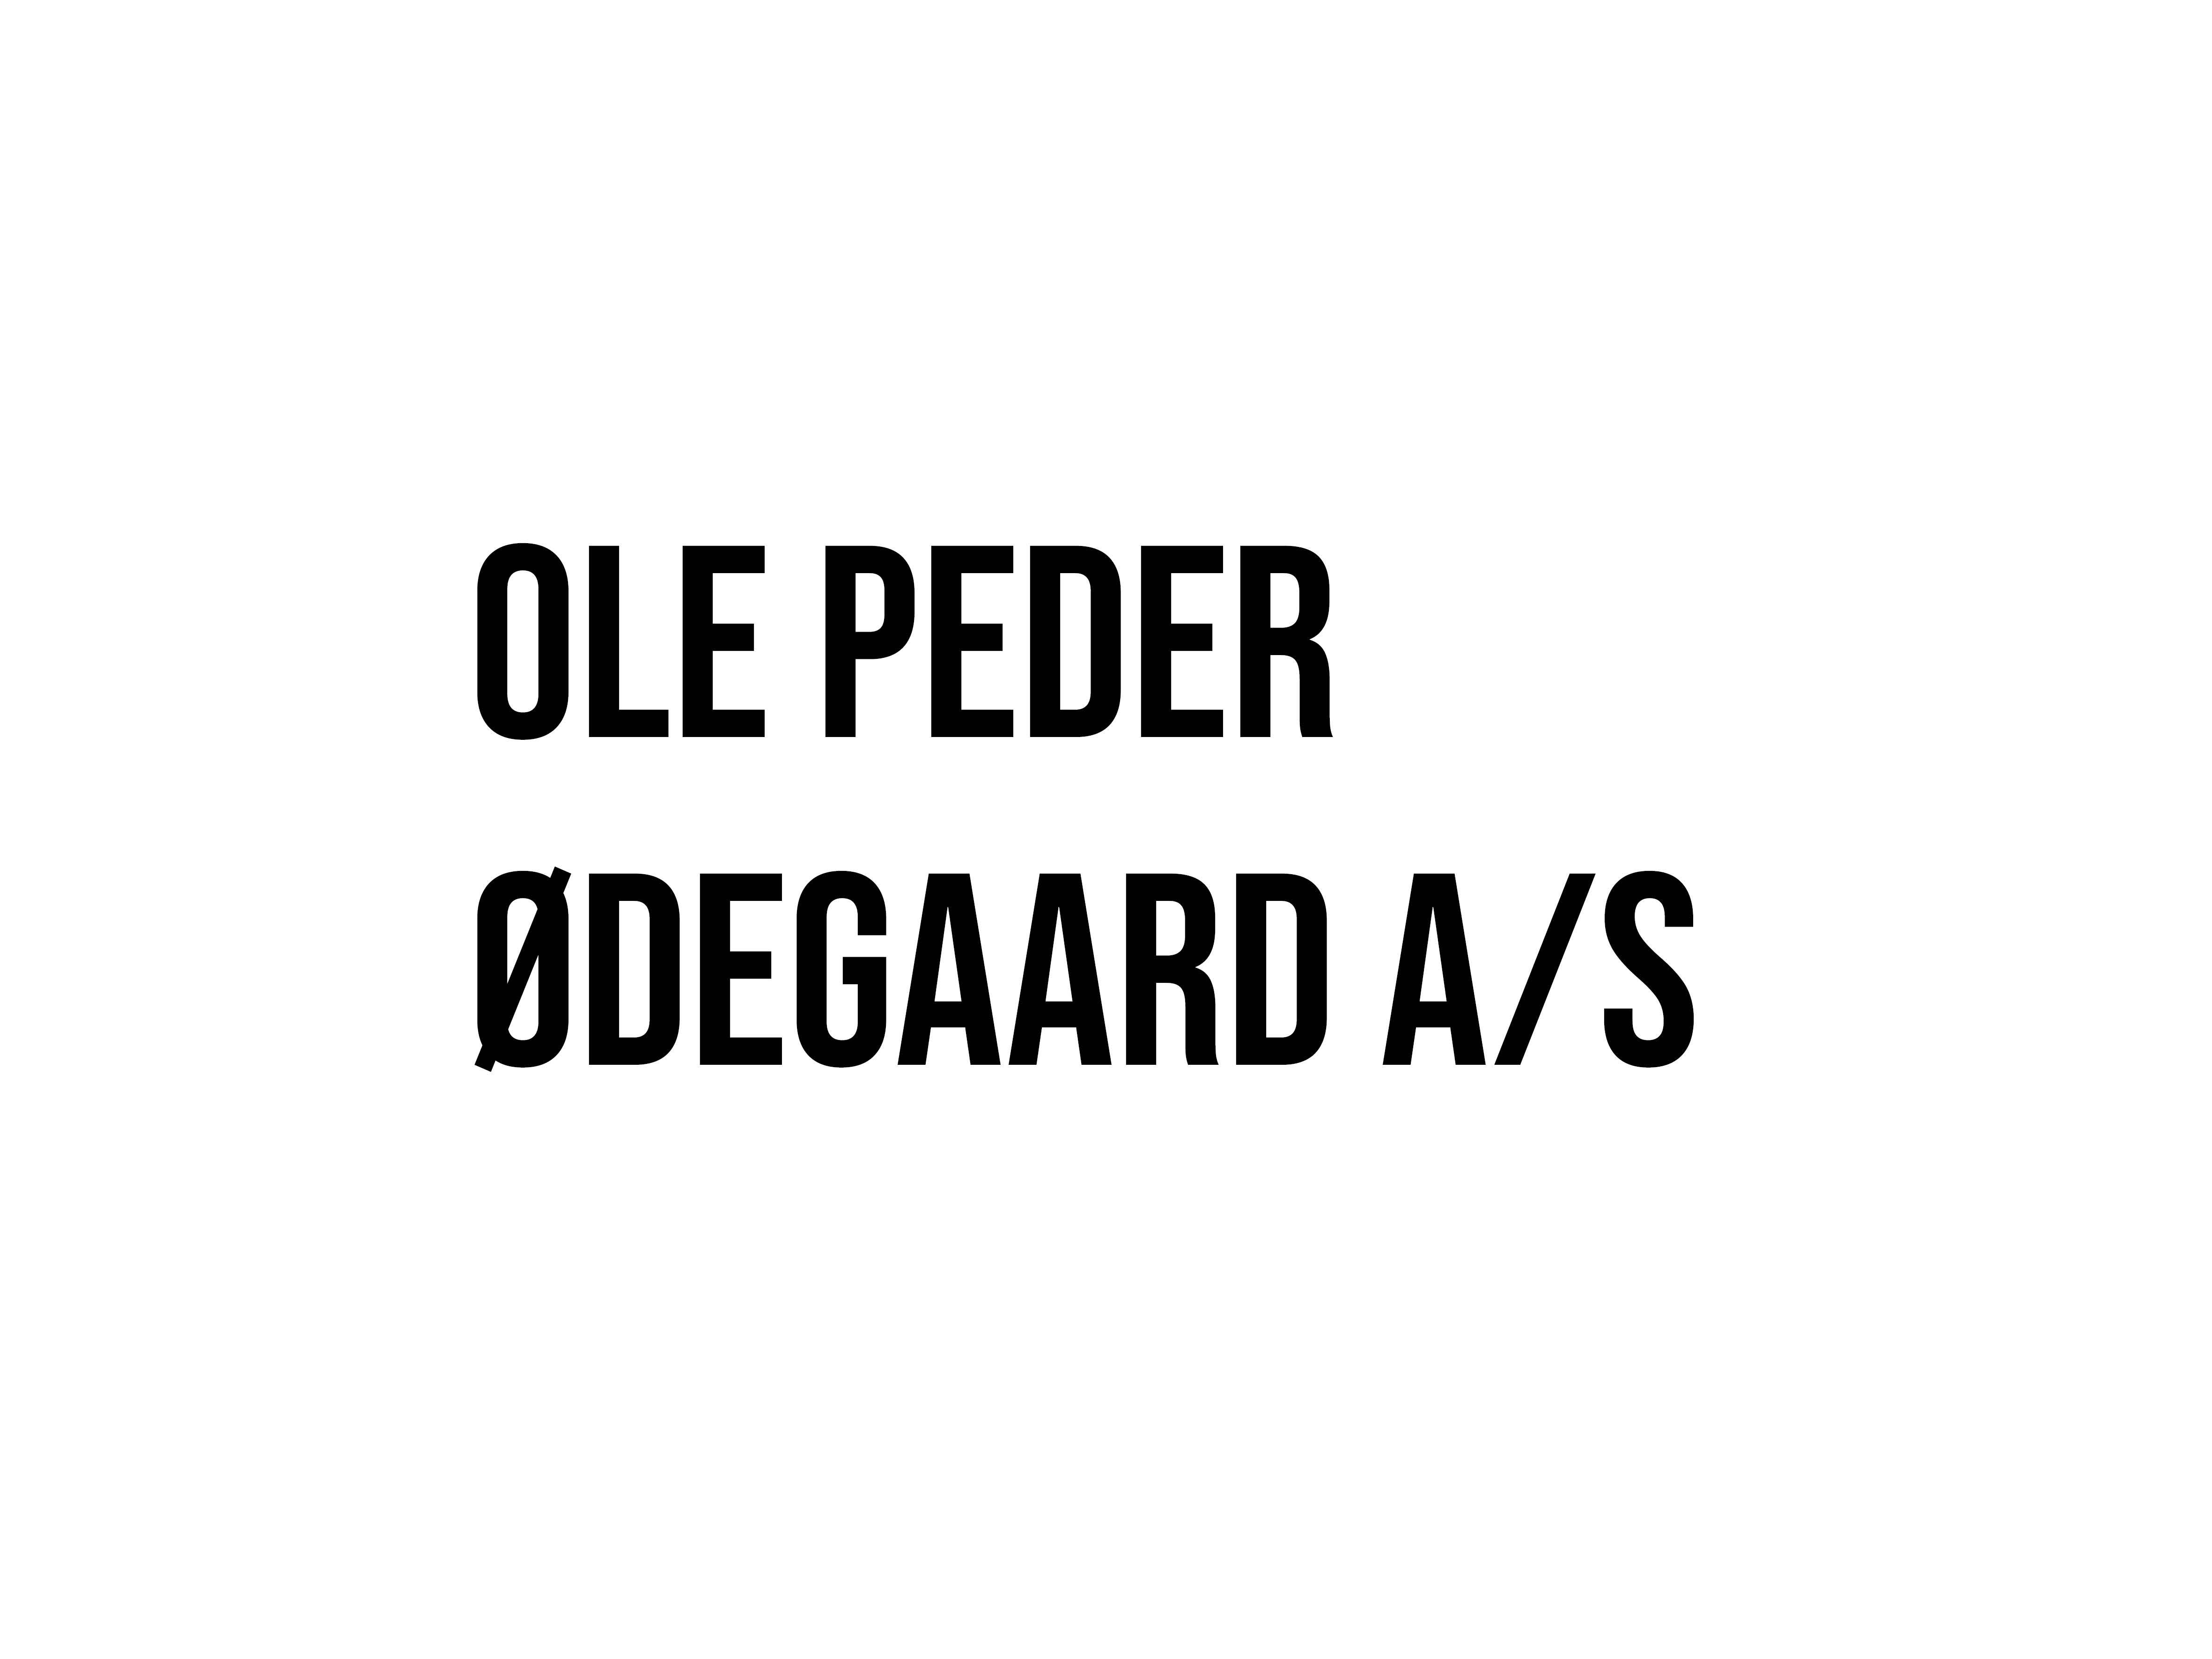 Ole Peder Ødegaard A/S